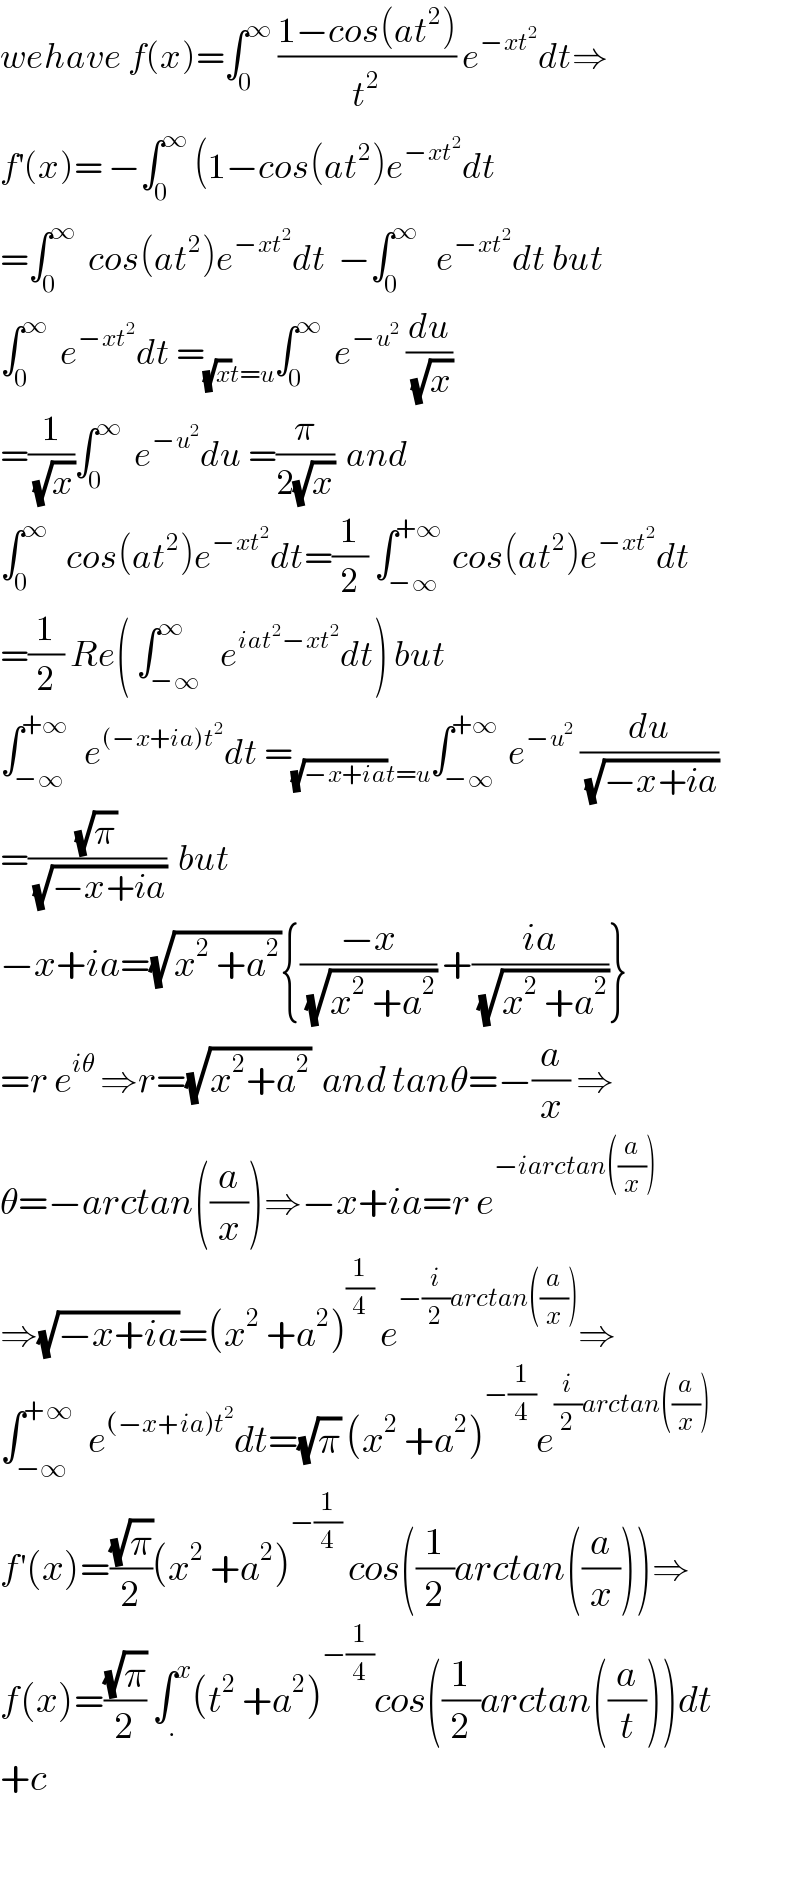 wehave f(x)=∫_0 ^∞  ((1−cos(at^2 ))/t^2 ) e^(−xt^2 ) dt⇒  f^′ (x)= −∫_0 ^∞  (1−cos(at^2 )e^(−xt^2 ) dt  =∫_0 ^∞   cos(at^2 )e^(−xt^2 ) dt  −∫_0 ^∞    e^(−xt^2 ) dt but  ∫_0 ^∞   e^(−xt^2 ) dt =_((√x)t=u) ∫_0 ^∞   e^(−u^2 )  (du/(√x))  =(1/(√x))∫_0 ^∞   e^(−u^2 ) du =(π/(2(√x)))  and  ∫_0 ^∞    cos(at^2 )e^(−xt^2 ) dt=(1/2) ∫_(−∞) ^(+∞)  cos(at^2 )e^(−xt^2 ) dt  =(1/2) Re( ∫_(−∞) ^∞   e^(iat^2 −xt^2 ) dt) but  ∫_(−∞) ^(+∞)   e^((−x+ia)t^2 ) dt =_((√(−x+ia))t=u) ∫_(−∞) ^(+∞)  e^(−u^2 )  (du/(√(−x+ia)))  =((√π)/(√(−x+ia)))  but   −x+ia=(√(x^2  +a^2 )){((−x)/(√(x^2  +a^2 ))) +((ia)/(√(x^2  +a^2 )))}  =r e^(iθ)  ⇒r=(√(x^2 +a^2 ))  and tanθ=−(a/x) ⇒  θ=−arctan((a/x))⇒−x+ia=r e^(−iarctan((a/x)))   ⇒(√(−x+ia))=(x^2  +a^2 )^(1/4)  e^(−(i/2)arctan((a/x))) ⇒  ∫_(−∞) ^(+∞)   e^((−x+ia)t^2 ) dt=(√π) (x^2  +a^2 )^(−(1/4)) e^((i/2)arctan((a/x)))   f^′ (x)=((√π)/2)(x^2  +a^2 )^(−(1/4))  cos((1/2)arctan((a/x)))⇒  f(x)=((√π)/2) ∫_. ^x (t^2  +a^2 )^(−(1/4)) cos((1/2)arctan((a/t)))dt  +c    